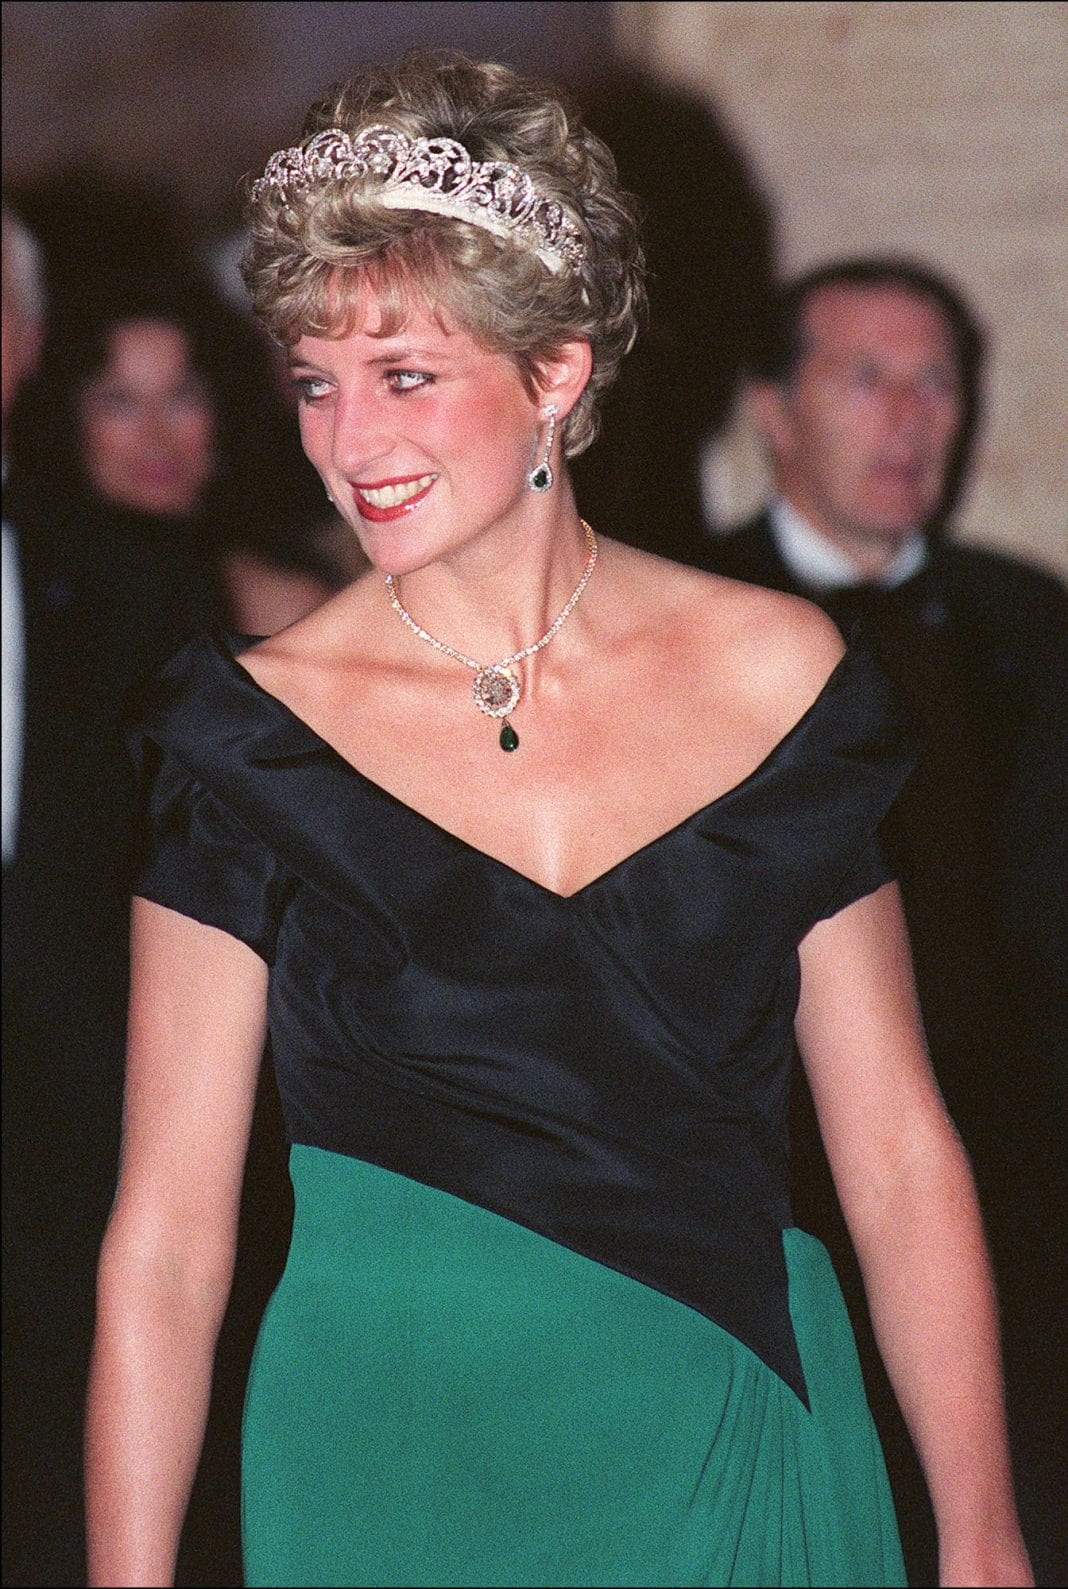 Πριγκίπισσα Diana: Όλα τα makeup tips που μας έχει διδάξει